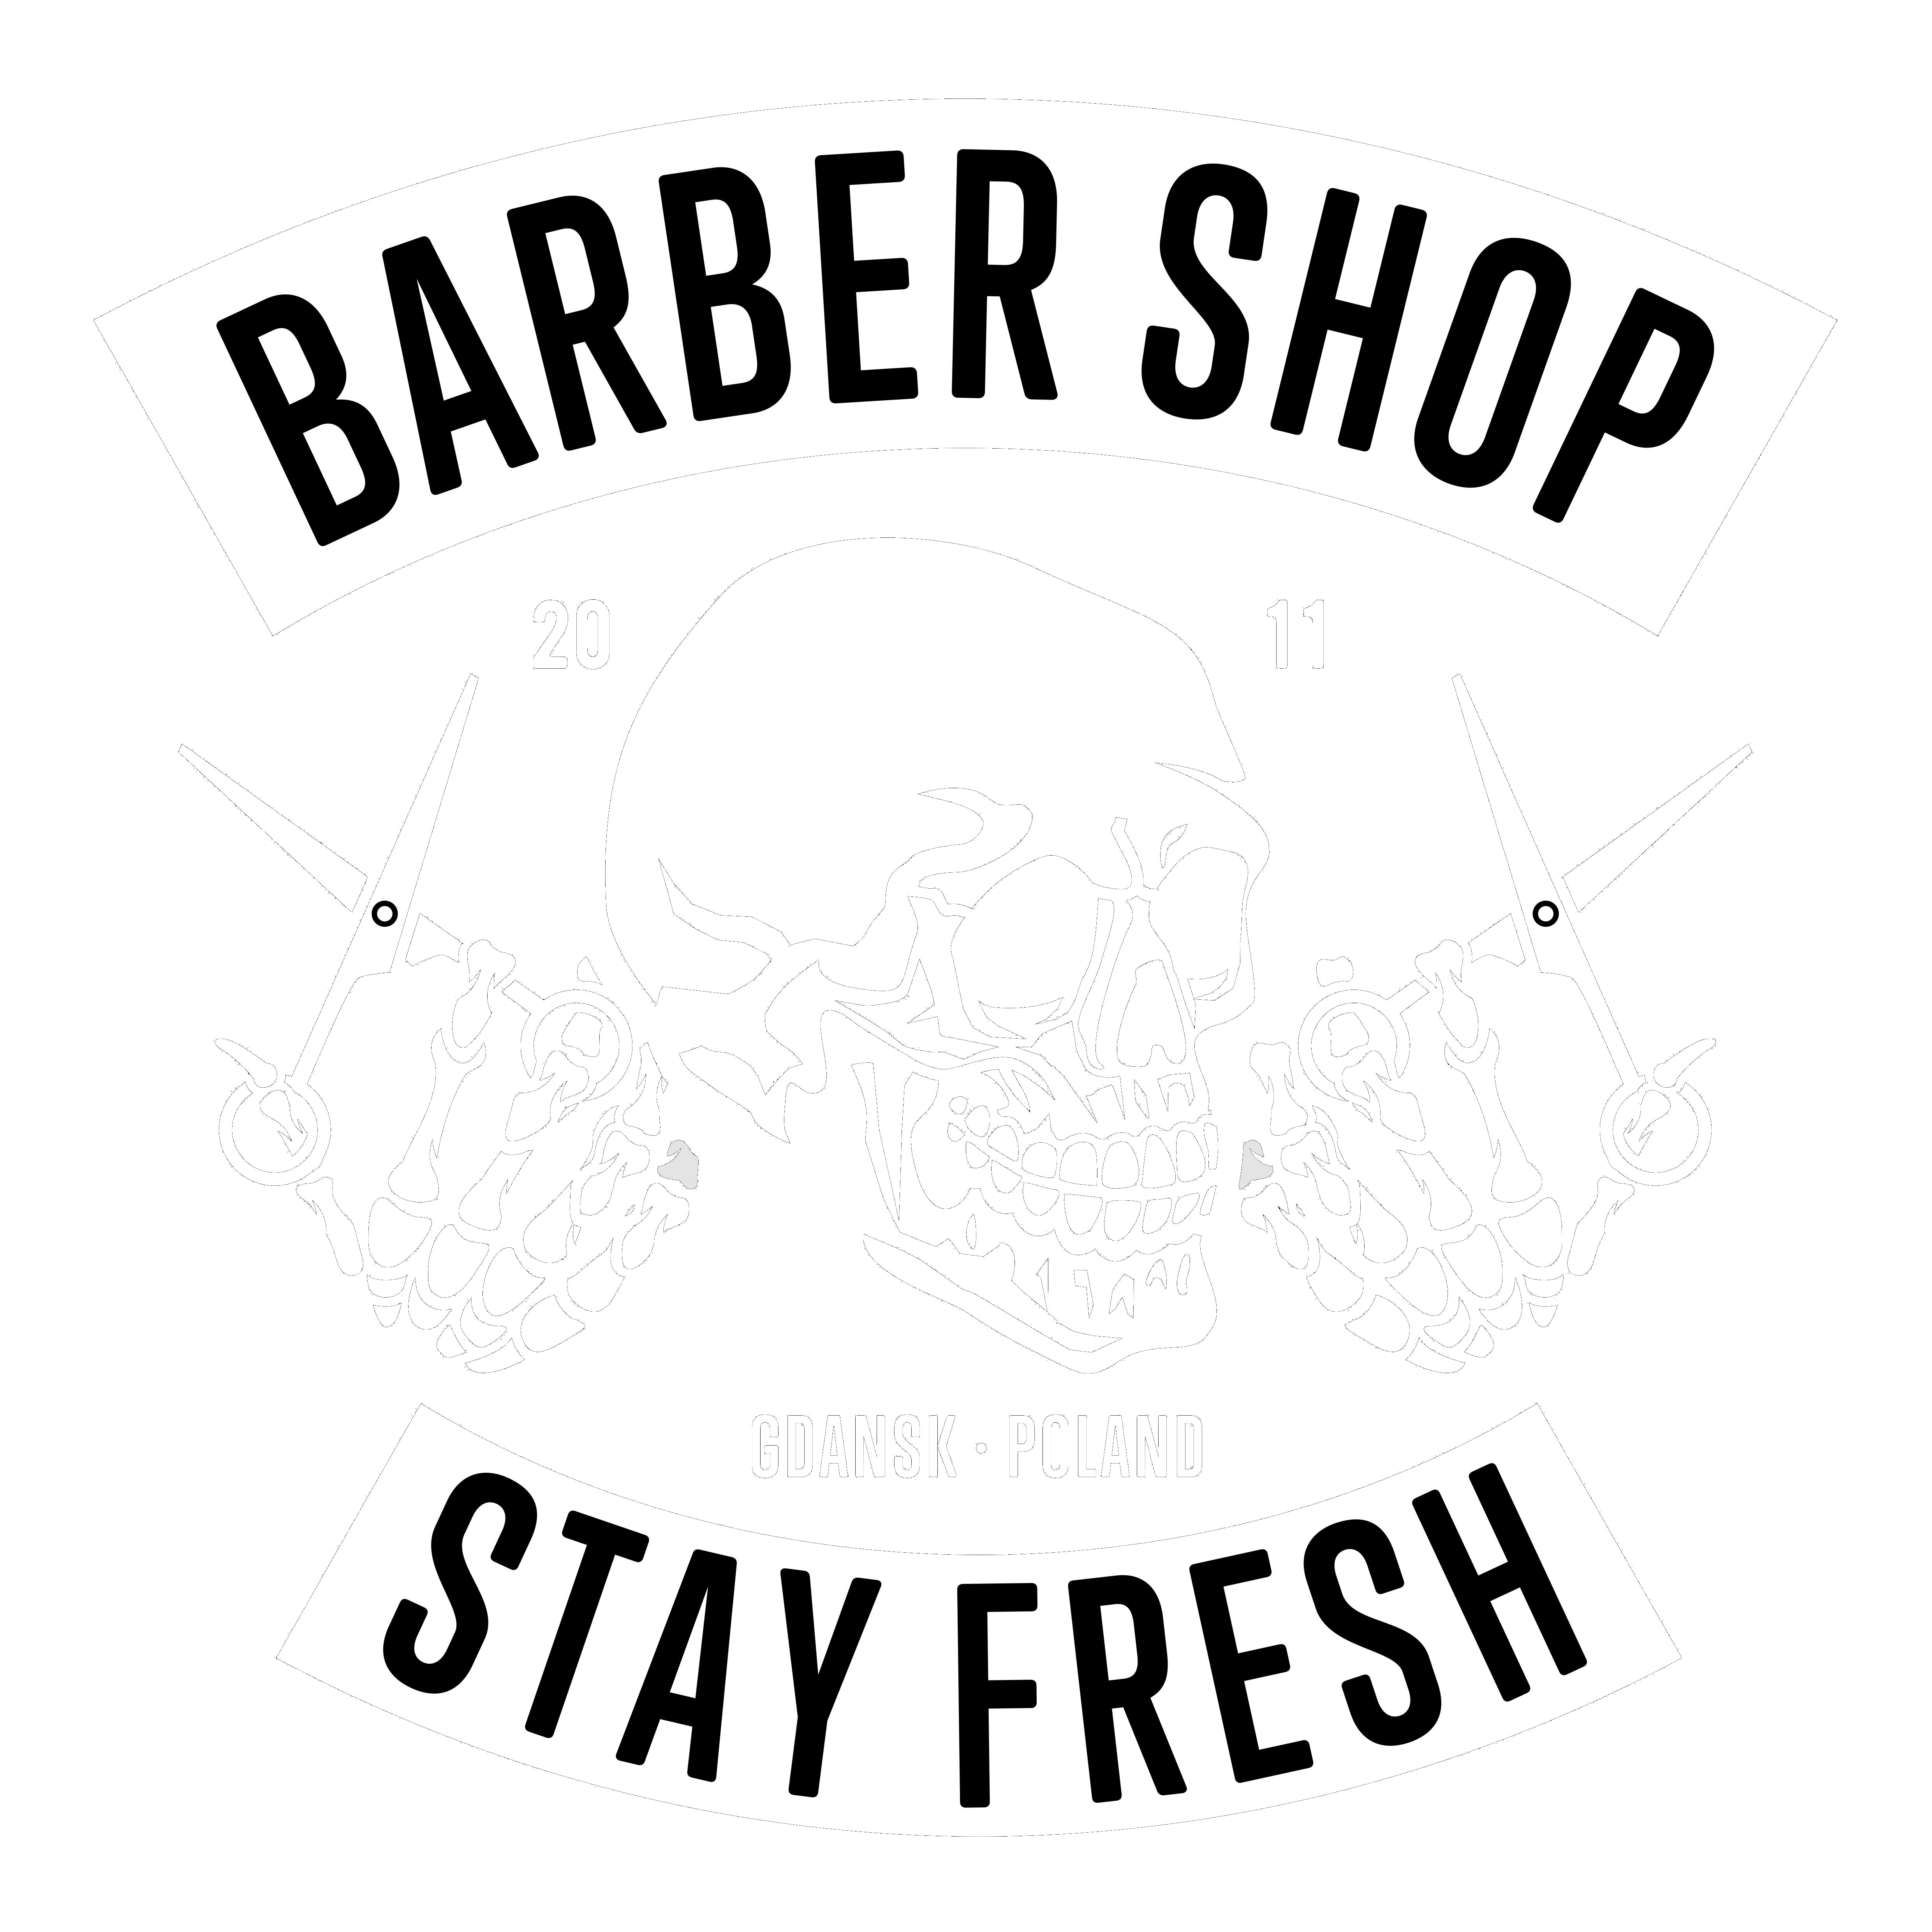 Barbershop klasyczne męskie fryzjerstwo